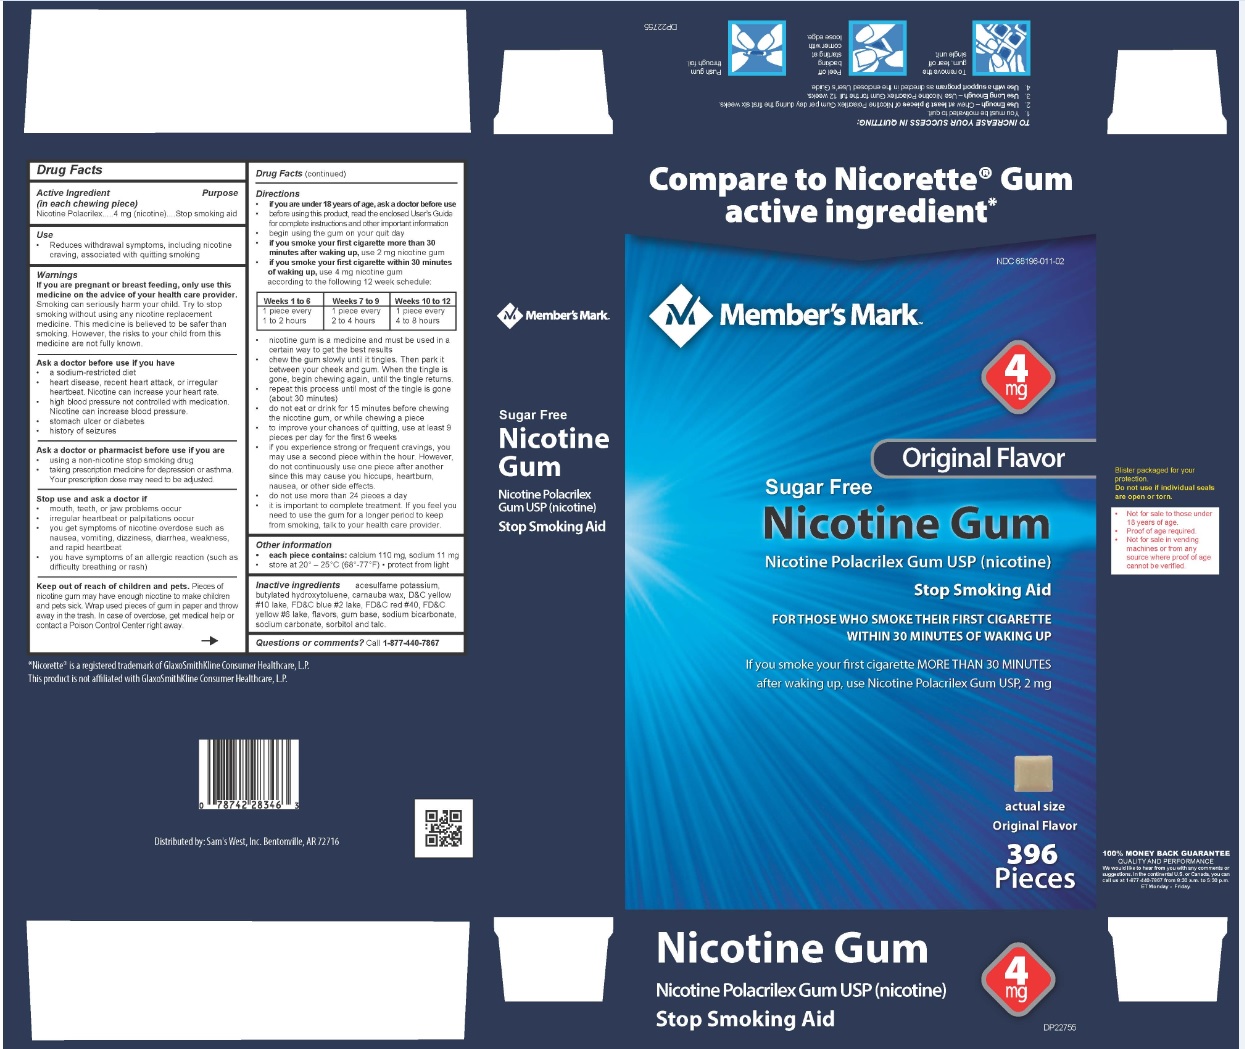 Nicotine Polacrilex Gum USP 4 mg Original Flavor